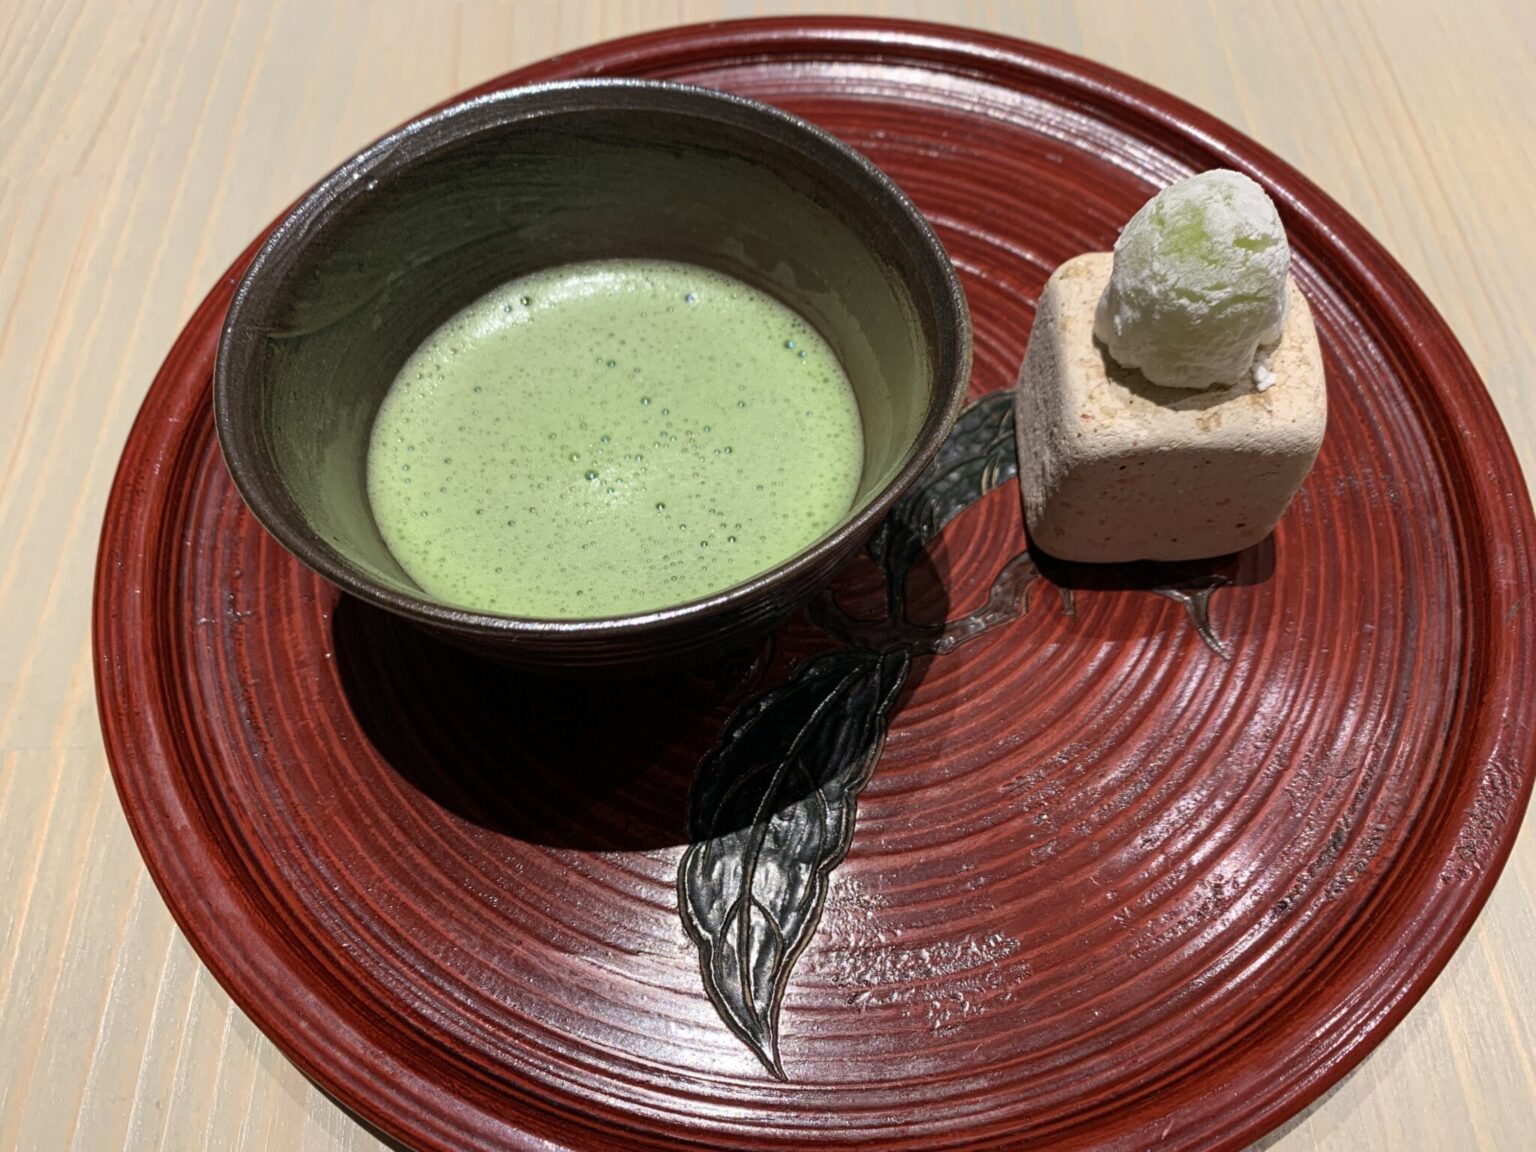 お薄は京都小山園「四方の薫」。和菓子はシャインマスカットと白あんを求肥で包んだ一口サイズの大福。